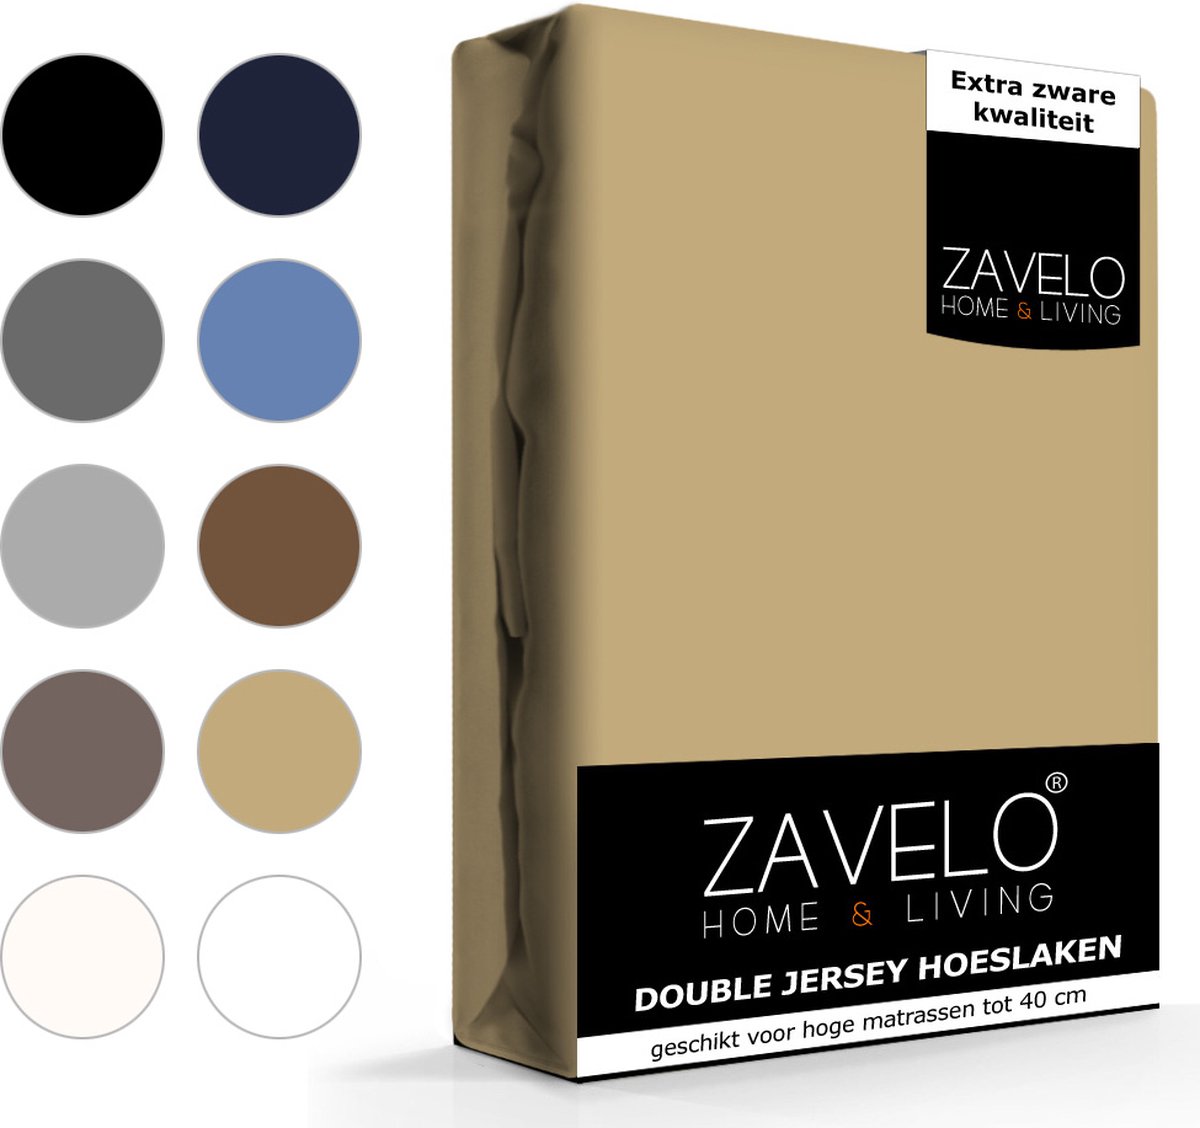 Slaaptextiel Zavelo Double Jersey Hoeslaken Taupe-lits-jumeaux (160x200 Cm)